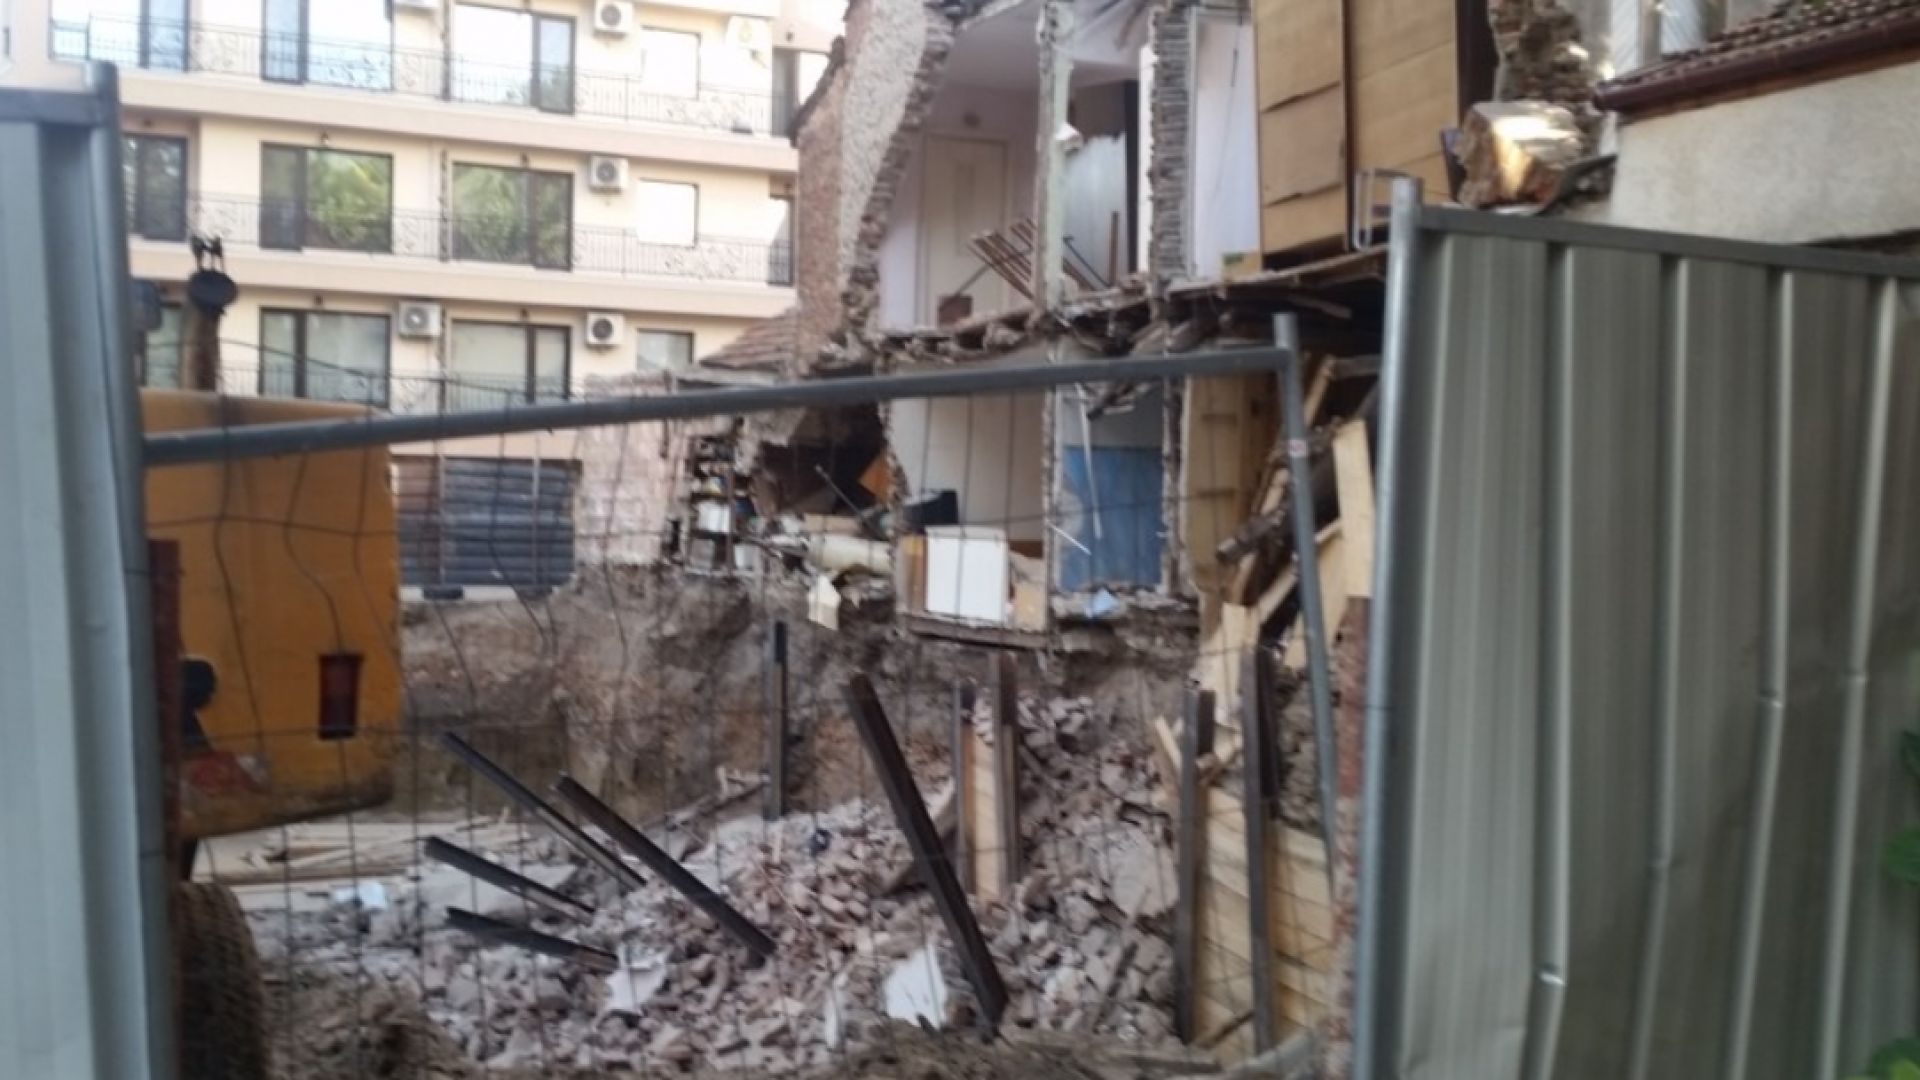 След рухналата стена на къща в Пловдив: Ще бъде ли съборена и построена наново постройката